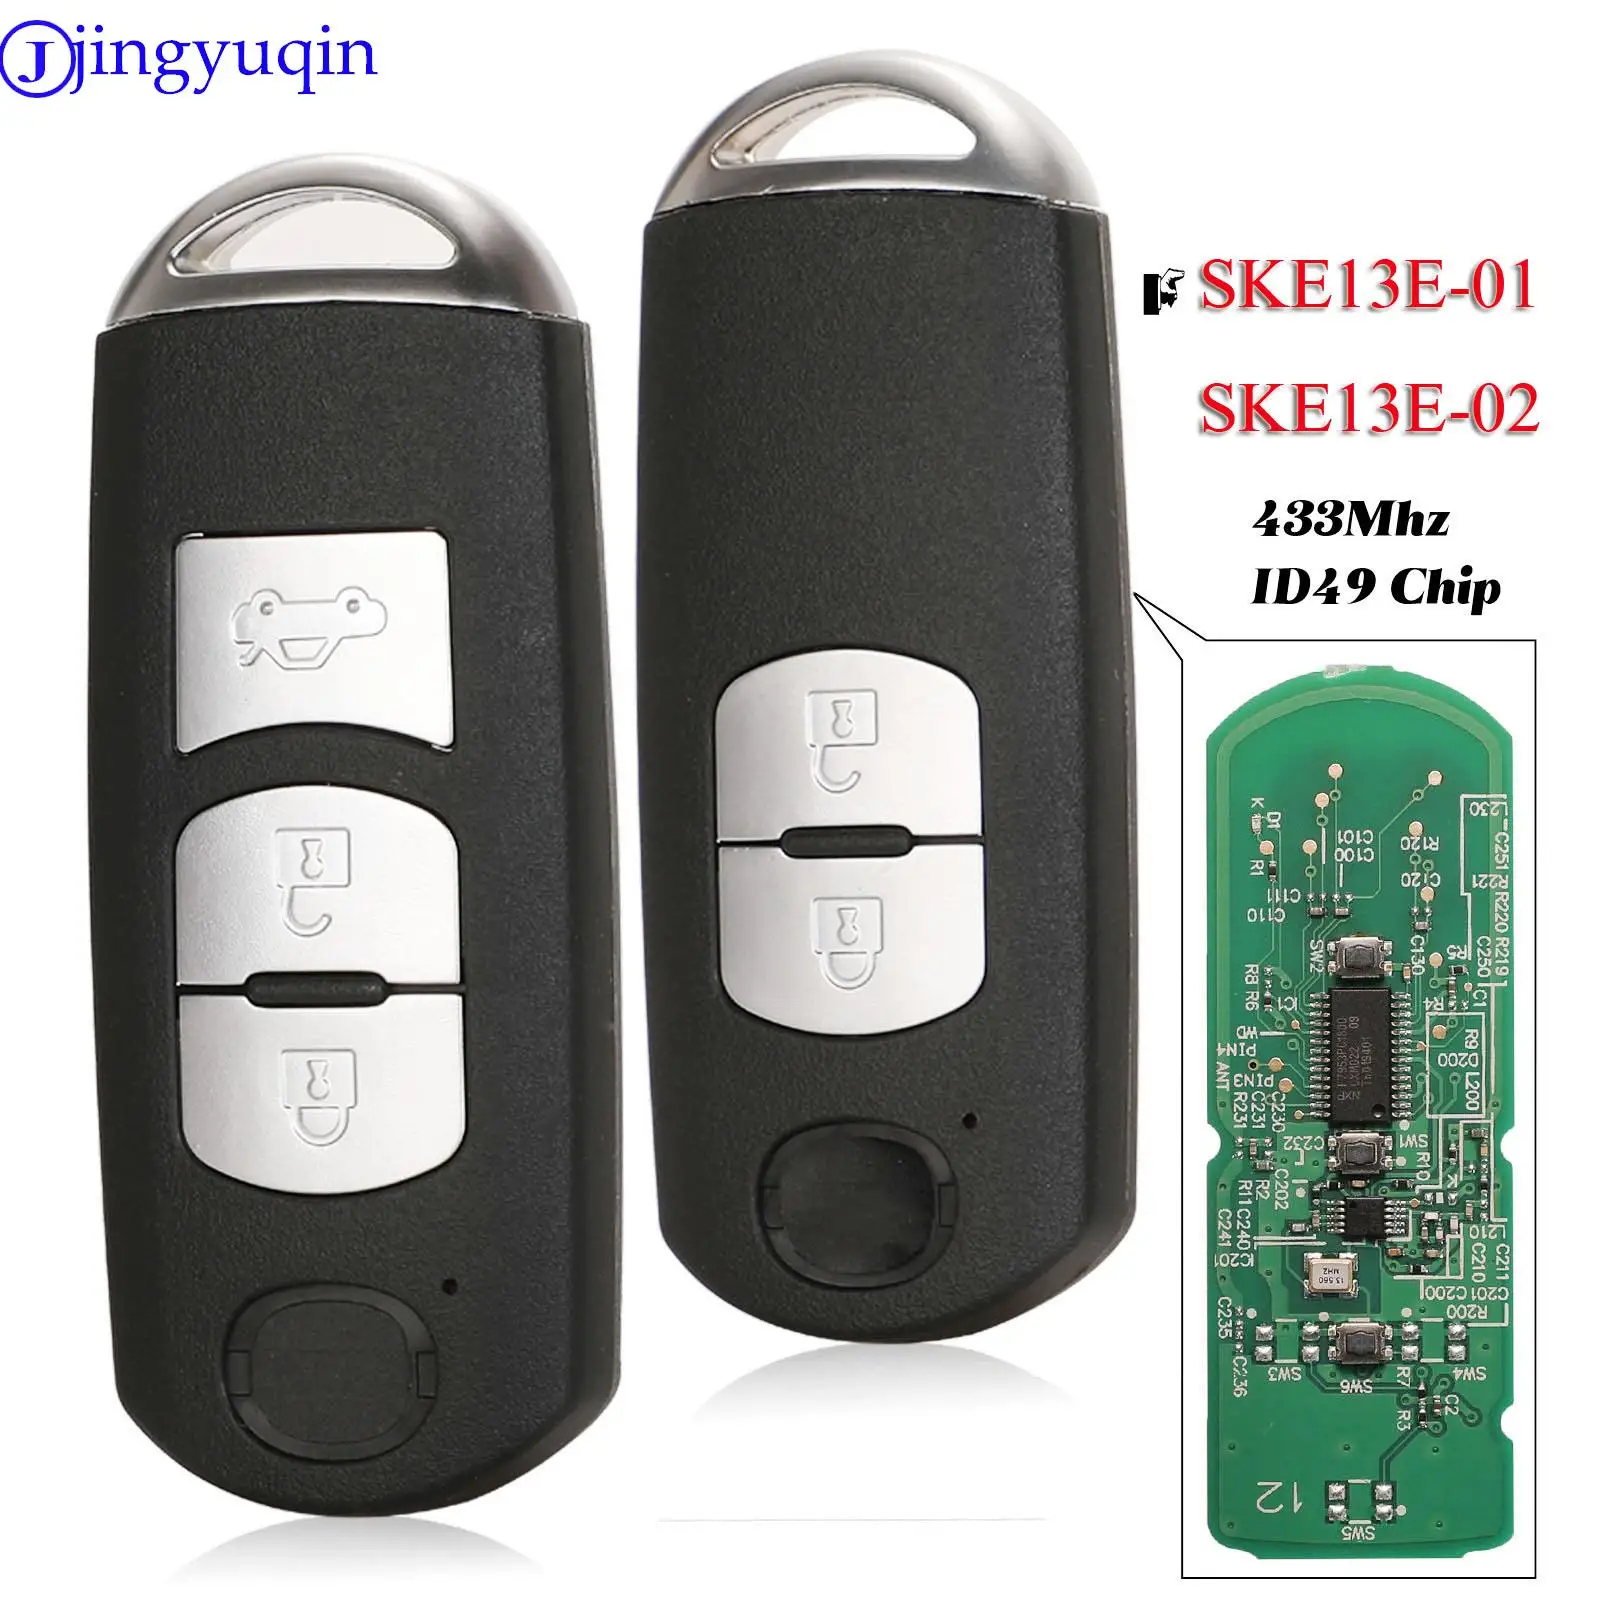 

jingyuqin 2/3Button Smart Key Fob 433Mhz ID49 Chip For MAZDA CX-3 Axela CX-5 Atenza Model SKE13E-01 SKE13E-02 Car Remote Control